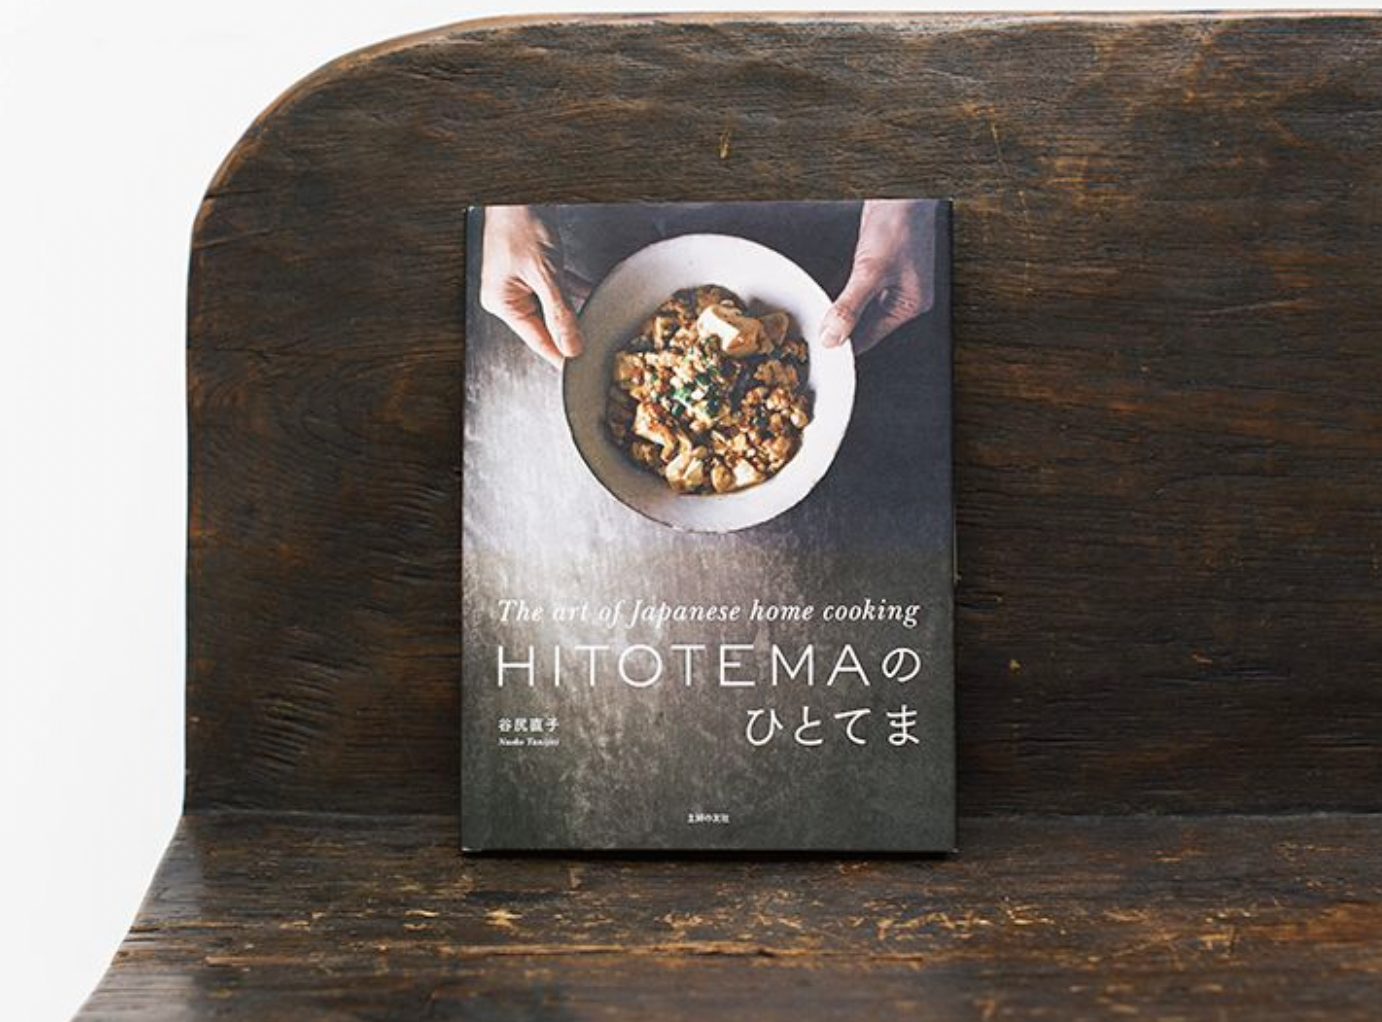 アートブックのような趣をもつ異色の料理本。「表紙の麻婆豆腐とともに映り込んだ谷尻さんの手から、温もりが伝わってくるような素敵な本です」（主婦の友社／4,180円）